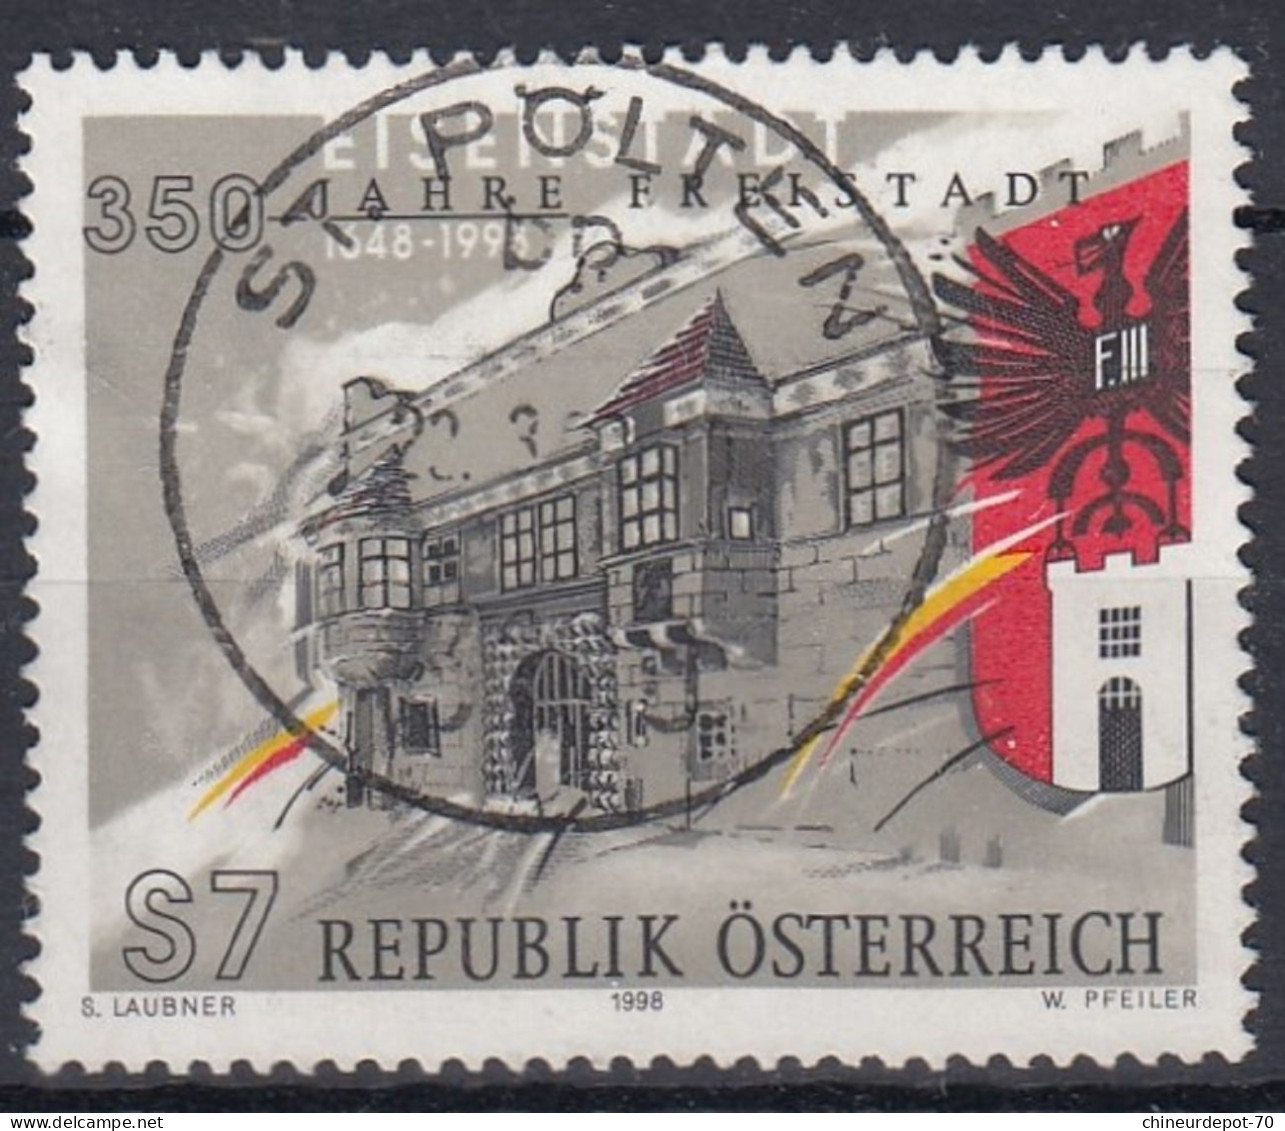 S7 REPUBLIK ÖSTERREICH S LAUBNER 1998 W PFEILER Cachet Sankt Polten - Usati